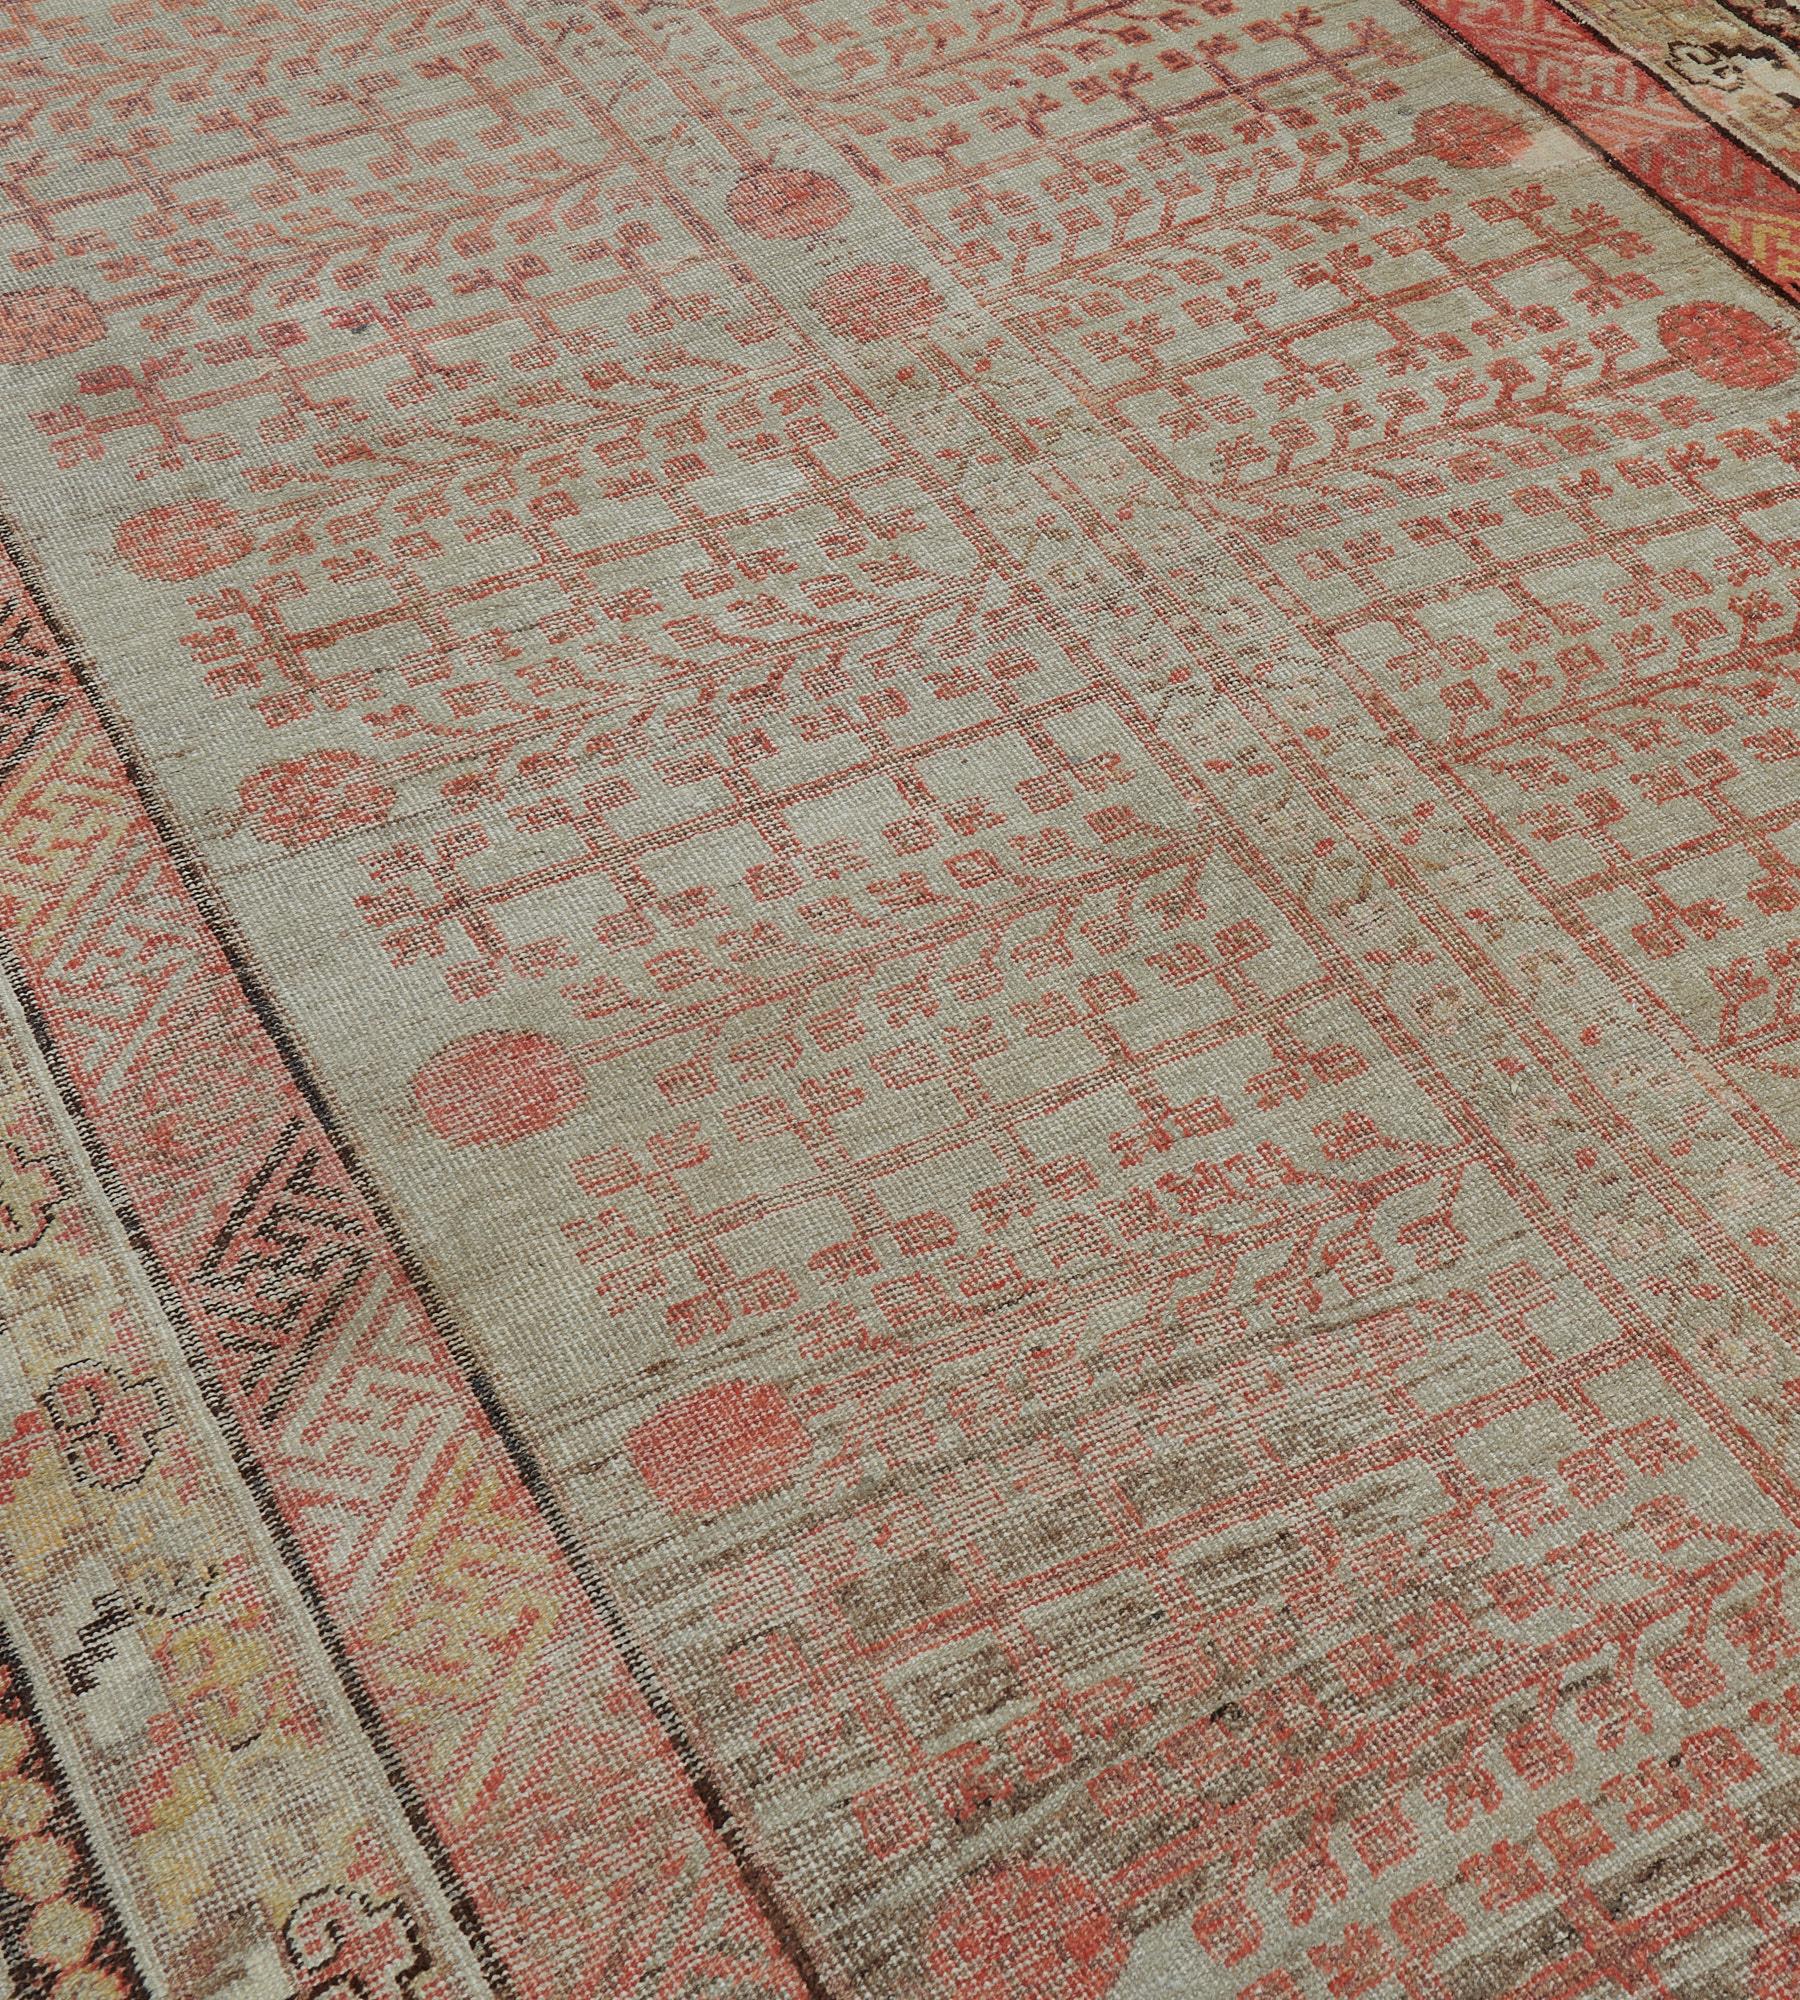 Ce tapis ancien du Khotan, datant de 1880, présente un champ à l'eau-de-nil avec un panneau vertical rouge terracotta clair contenant un motif polaire central issu d'un petit vase, une délicate vigne florale se terminant par une grenade, le panneau